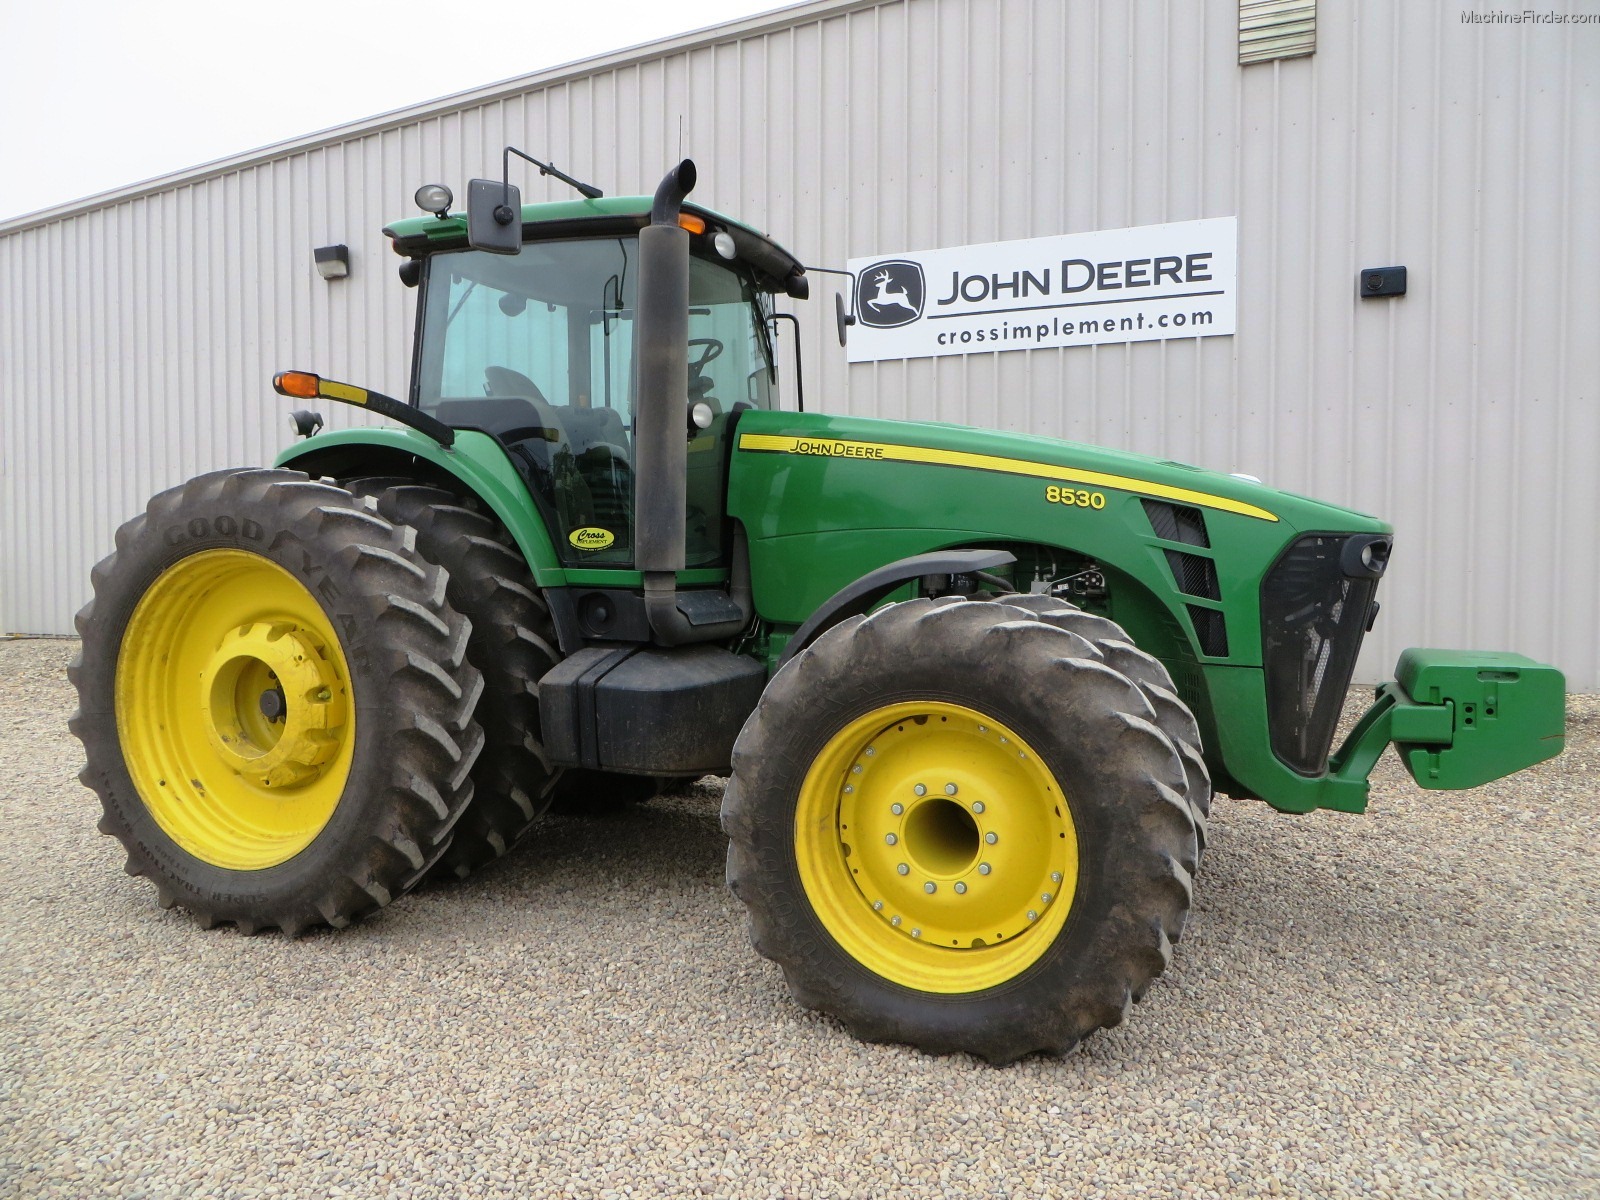 2007 John Deere 8530 Tractors Row Crop 100hp John Deere Machinefinder 6873